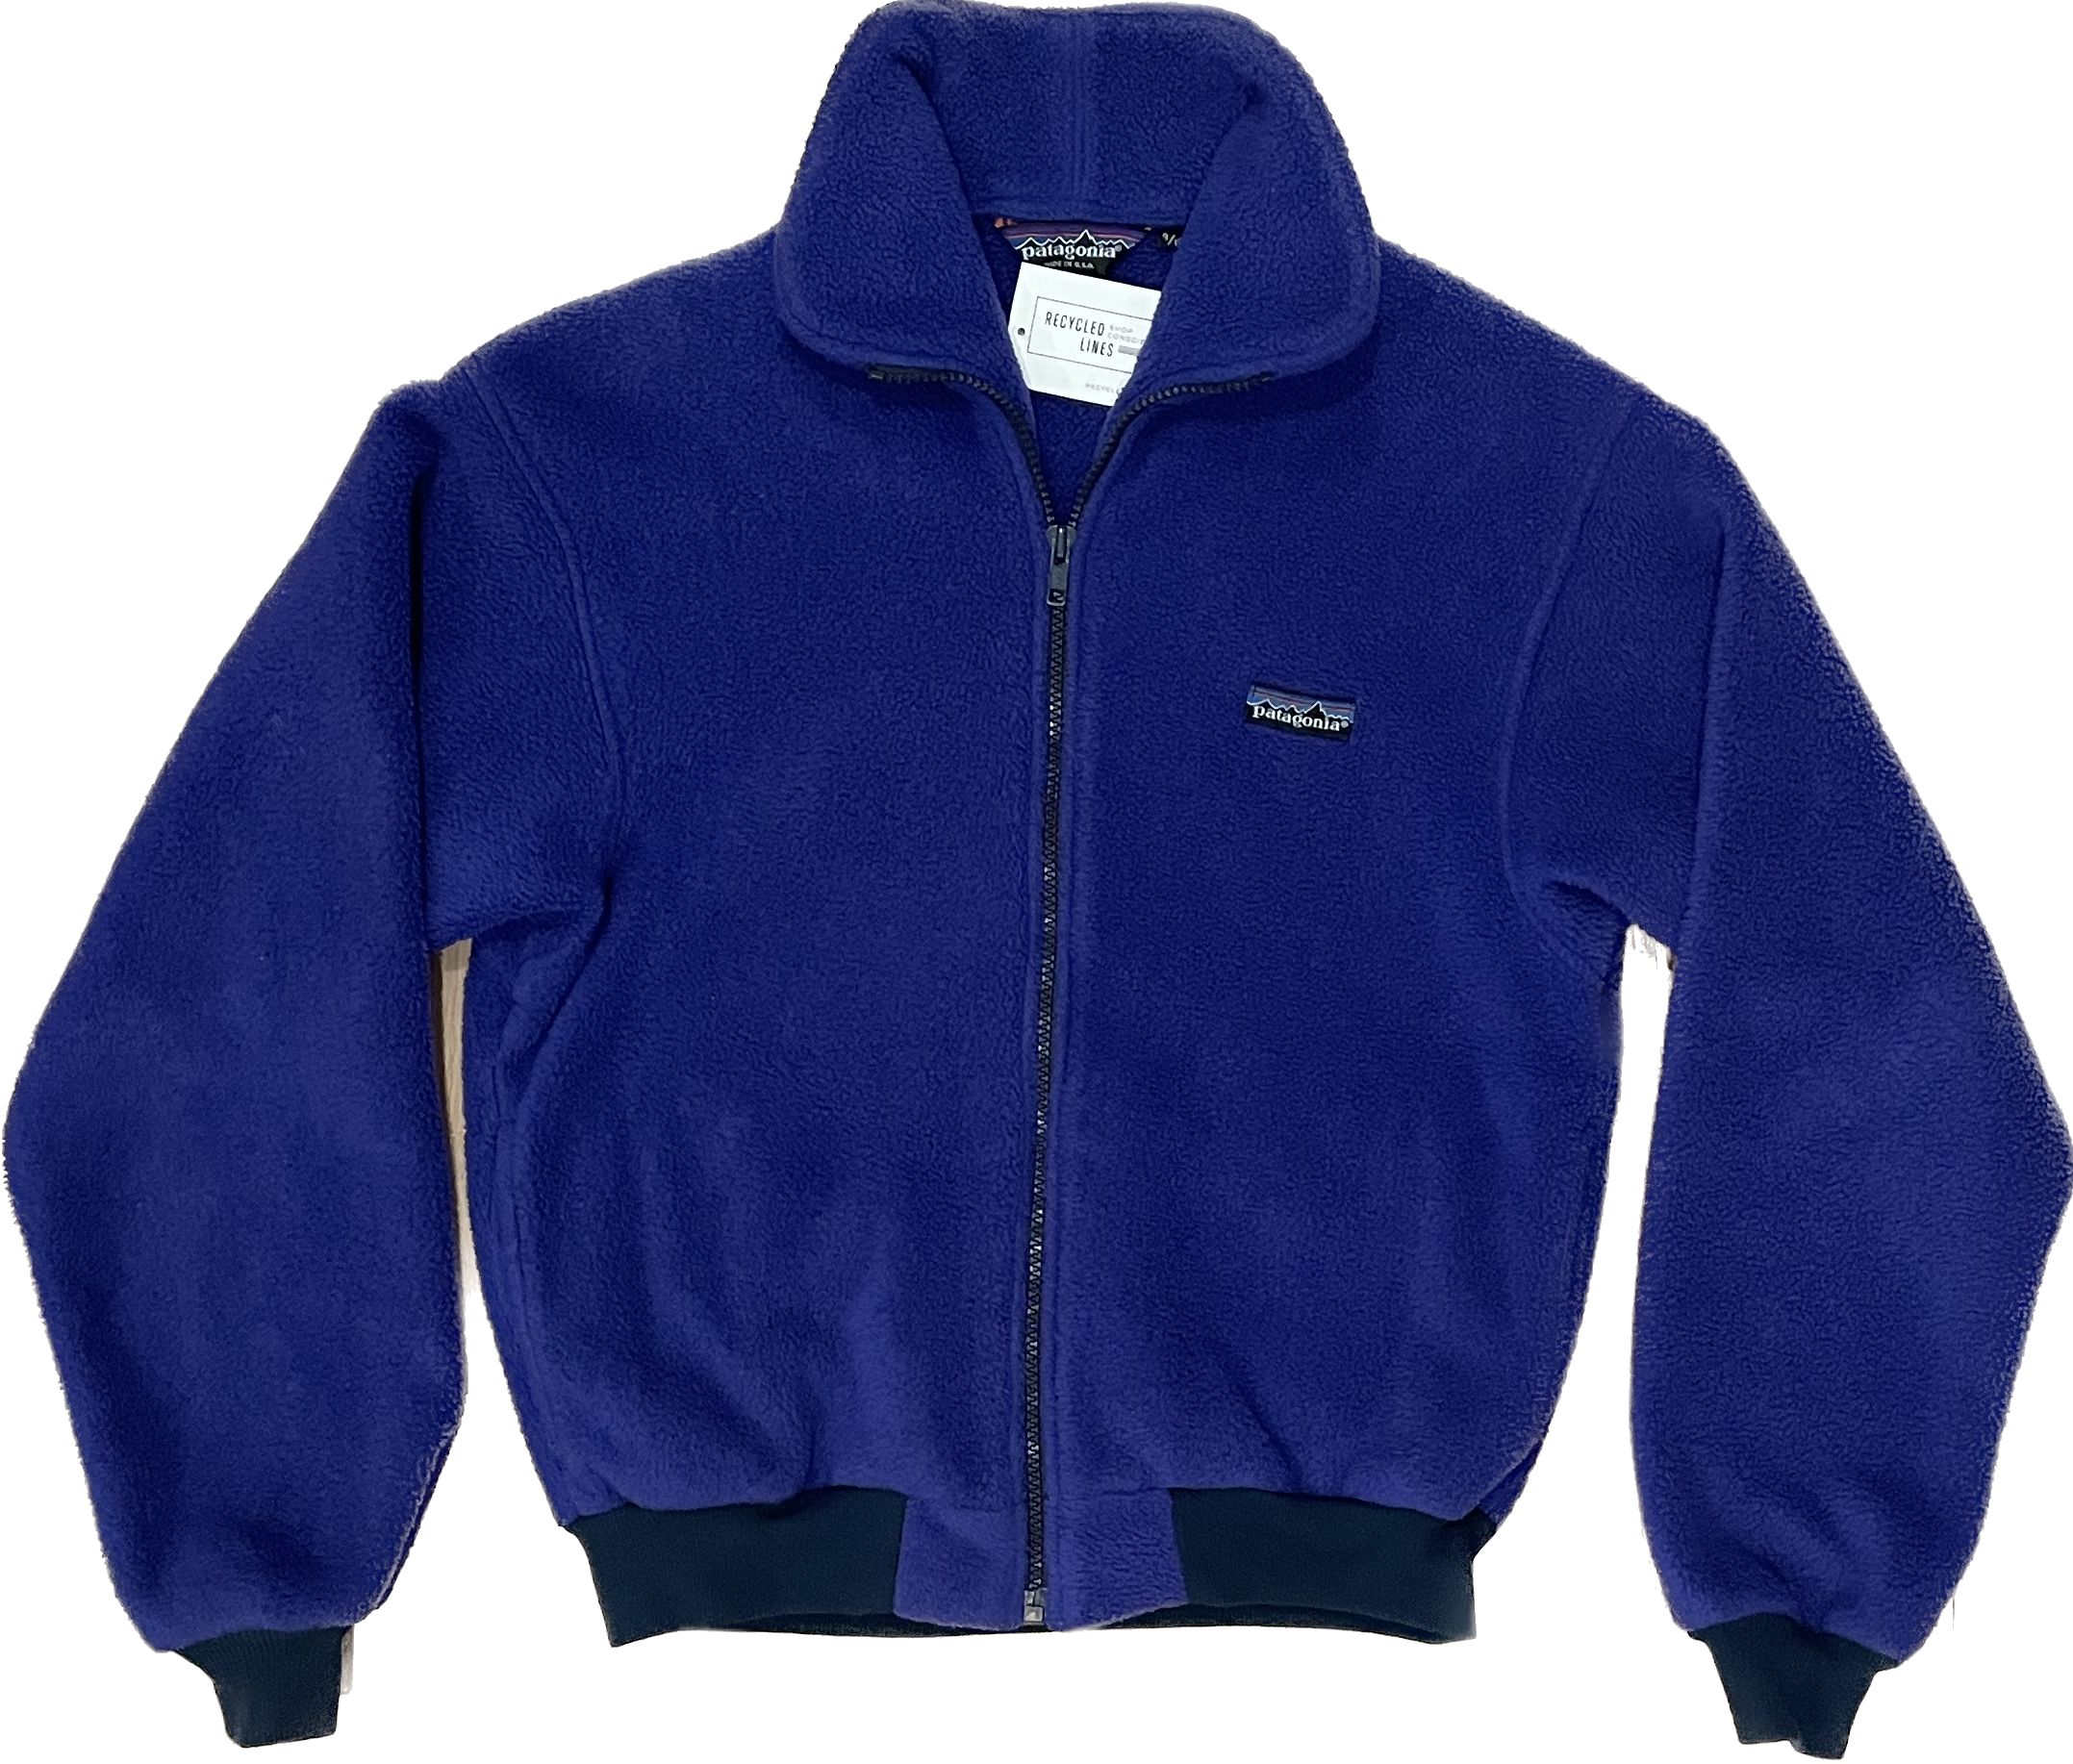 Patagonia Fleece Jacket, Blue Girls Size 9/10